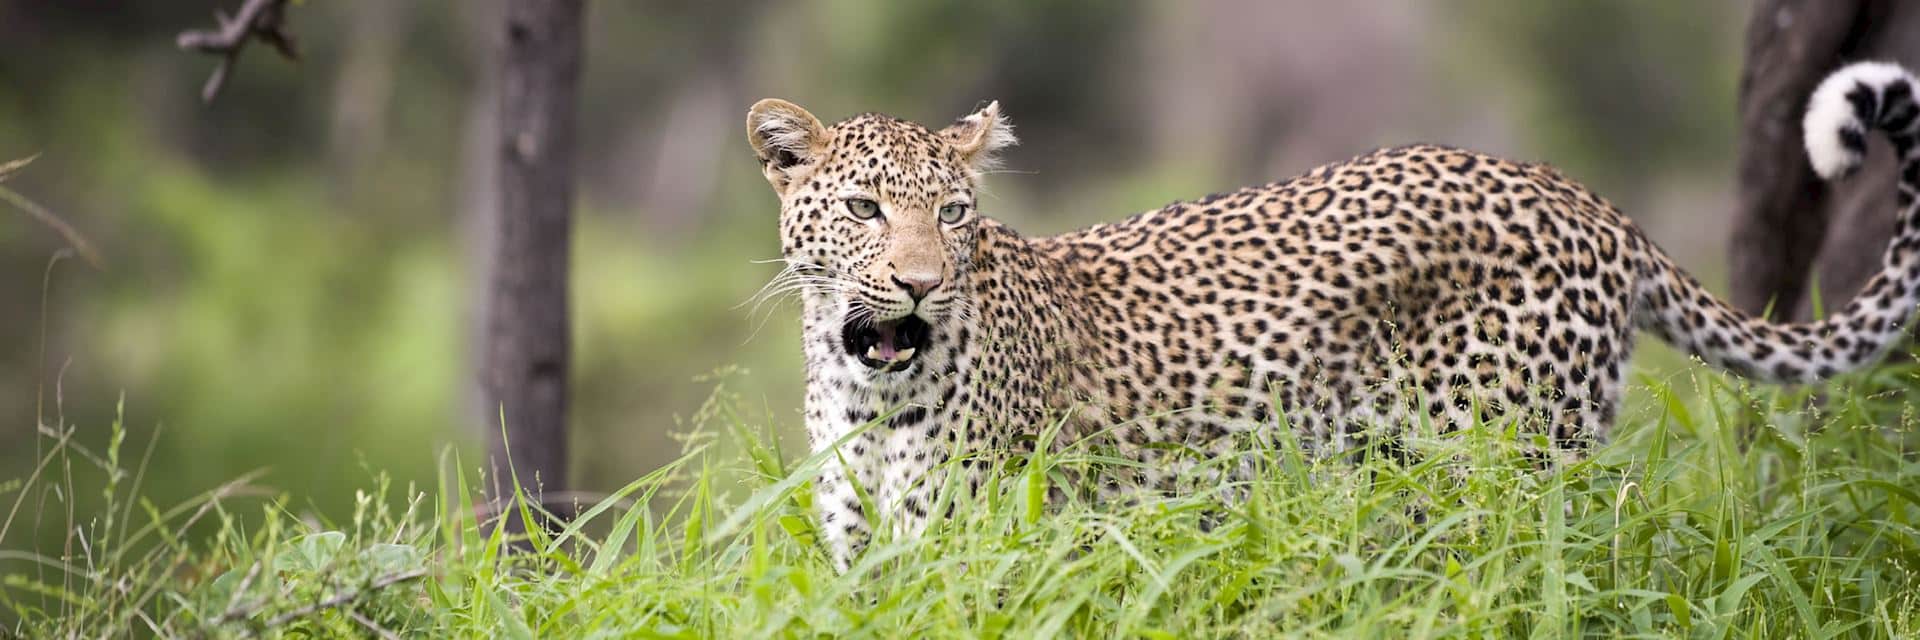 Leopard_Kruger_National_Park